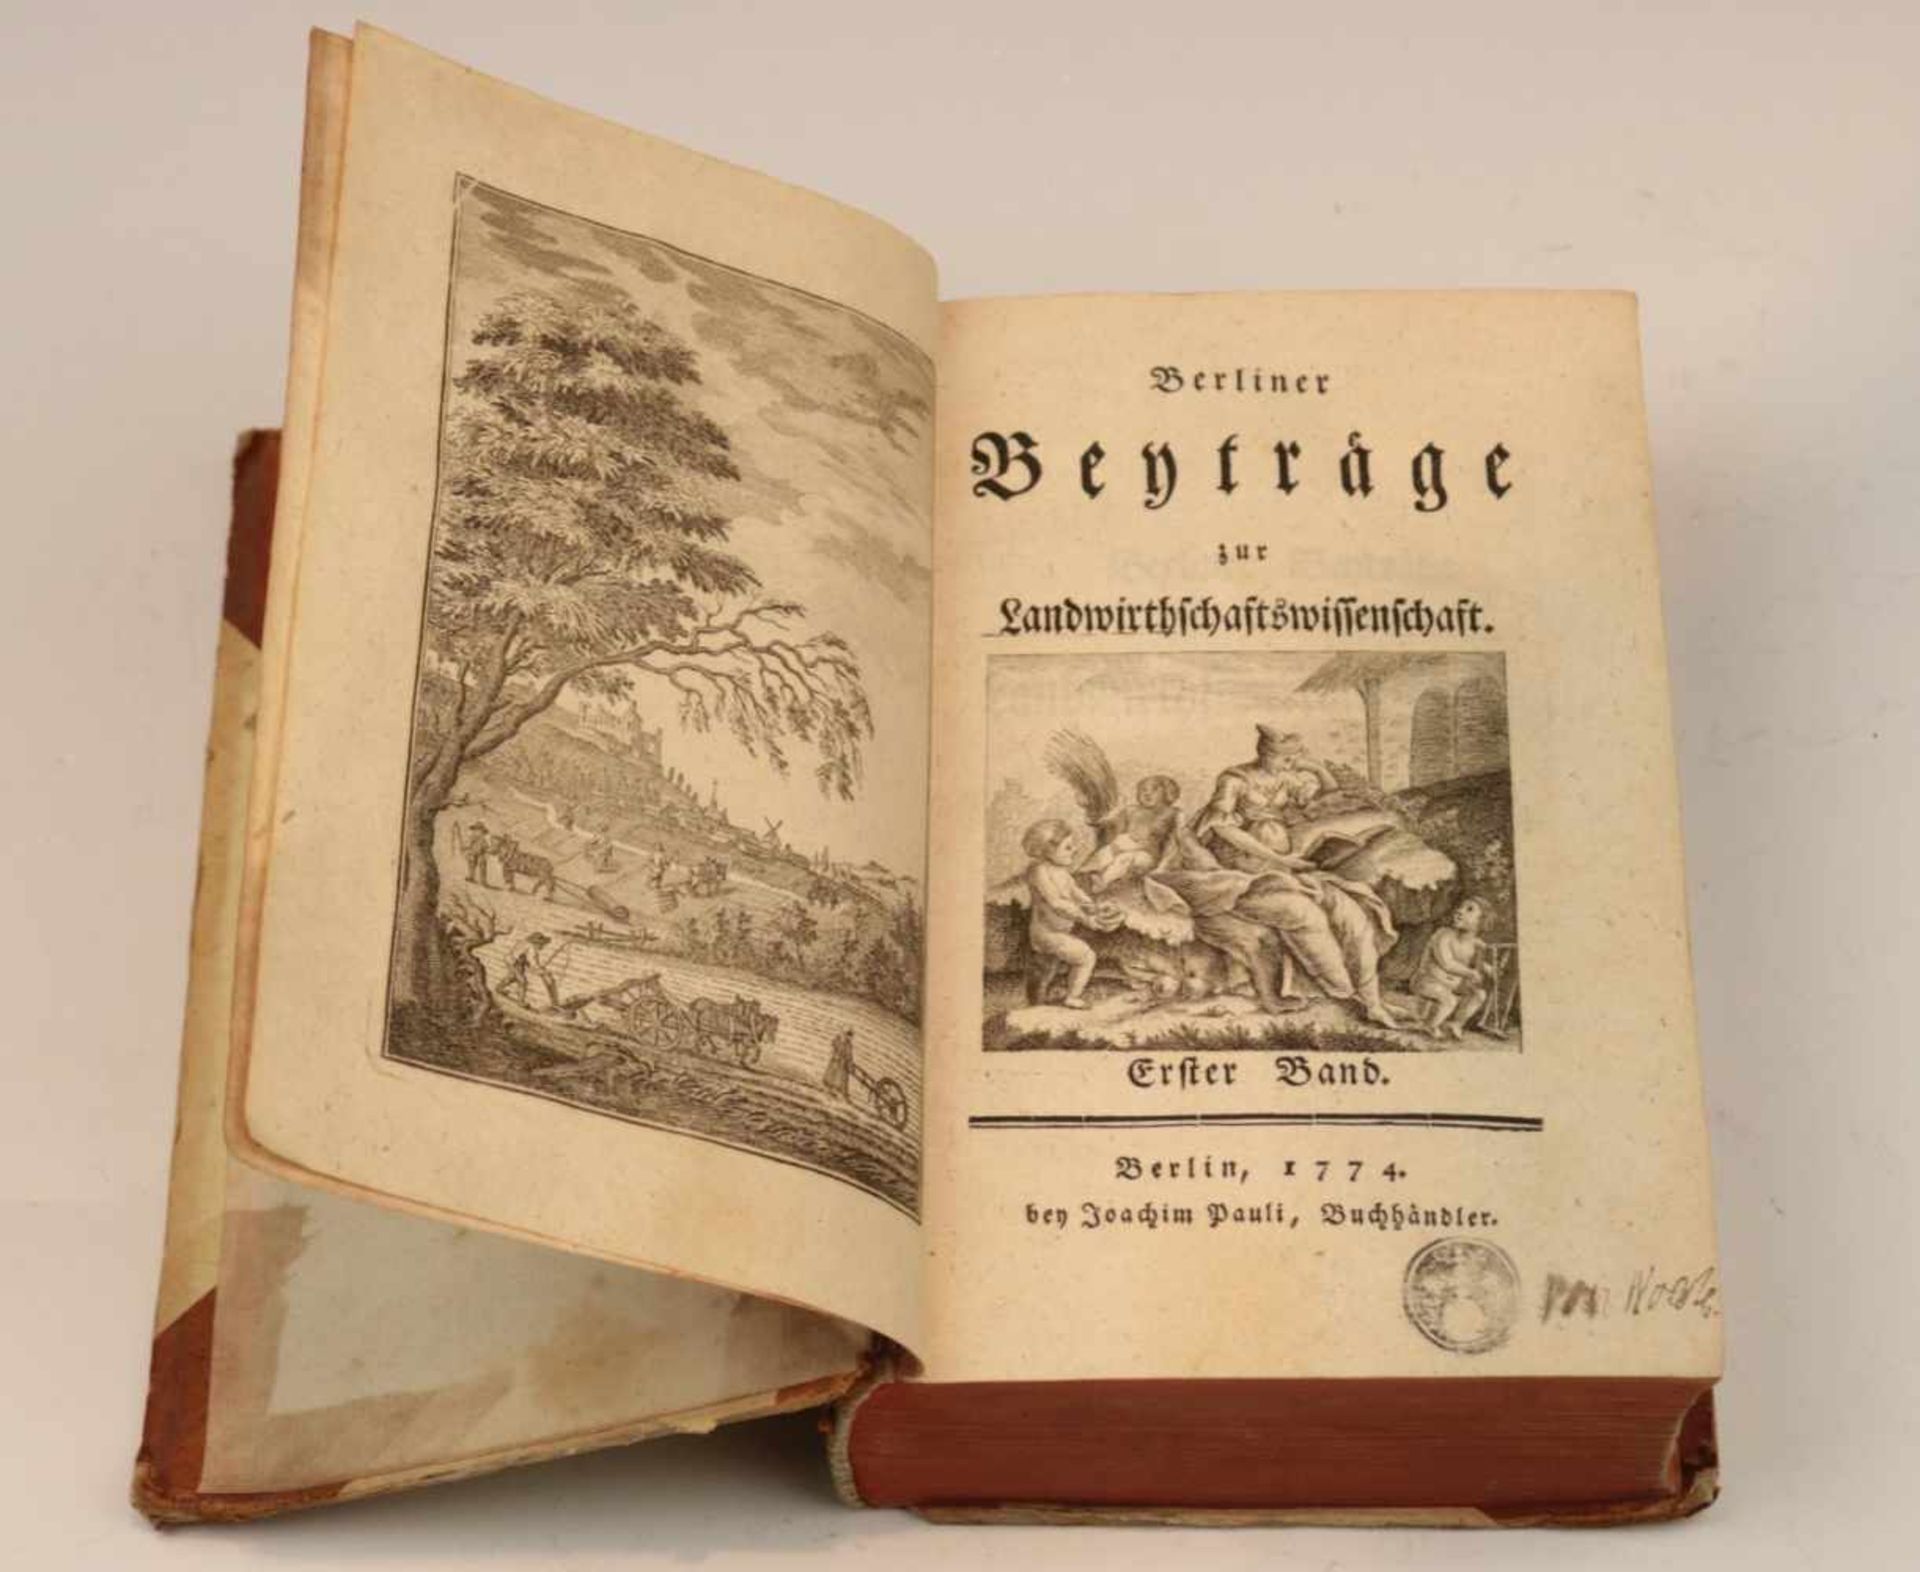 Berliner Beyträge zur Landwirthschaftswissenschaft.Joachim Pauli Buchhändler,Berlin, 1774.